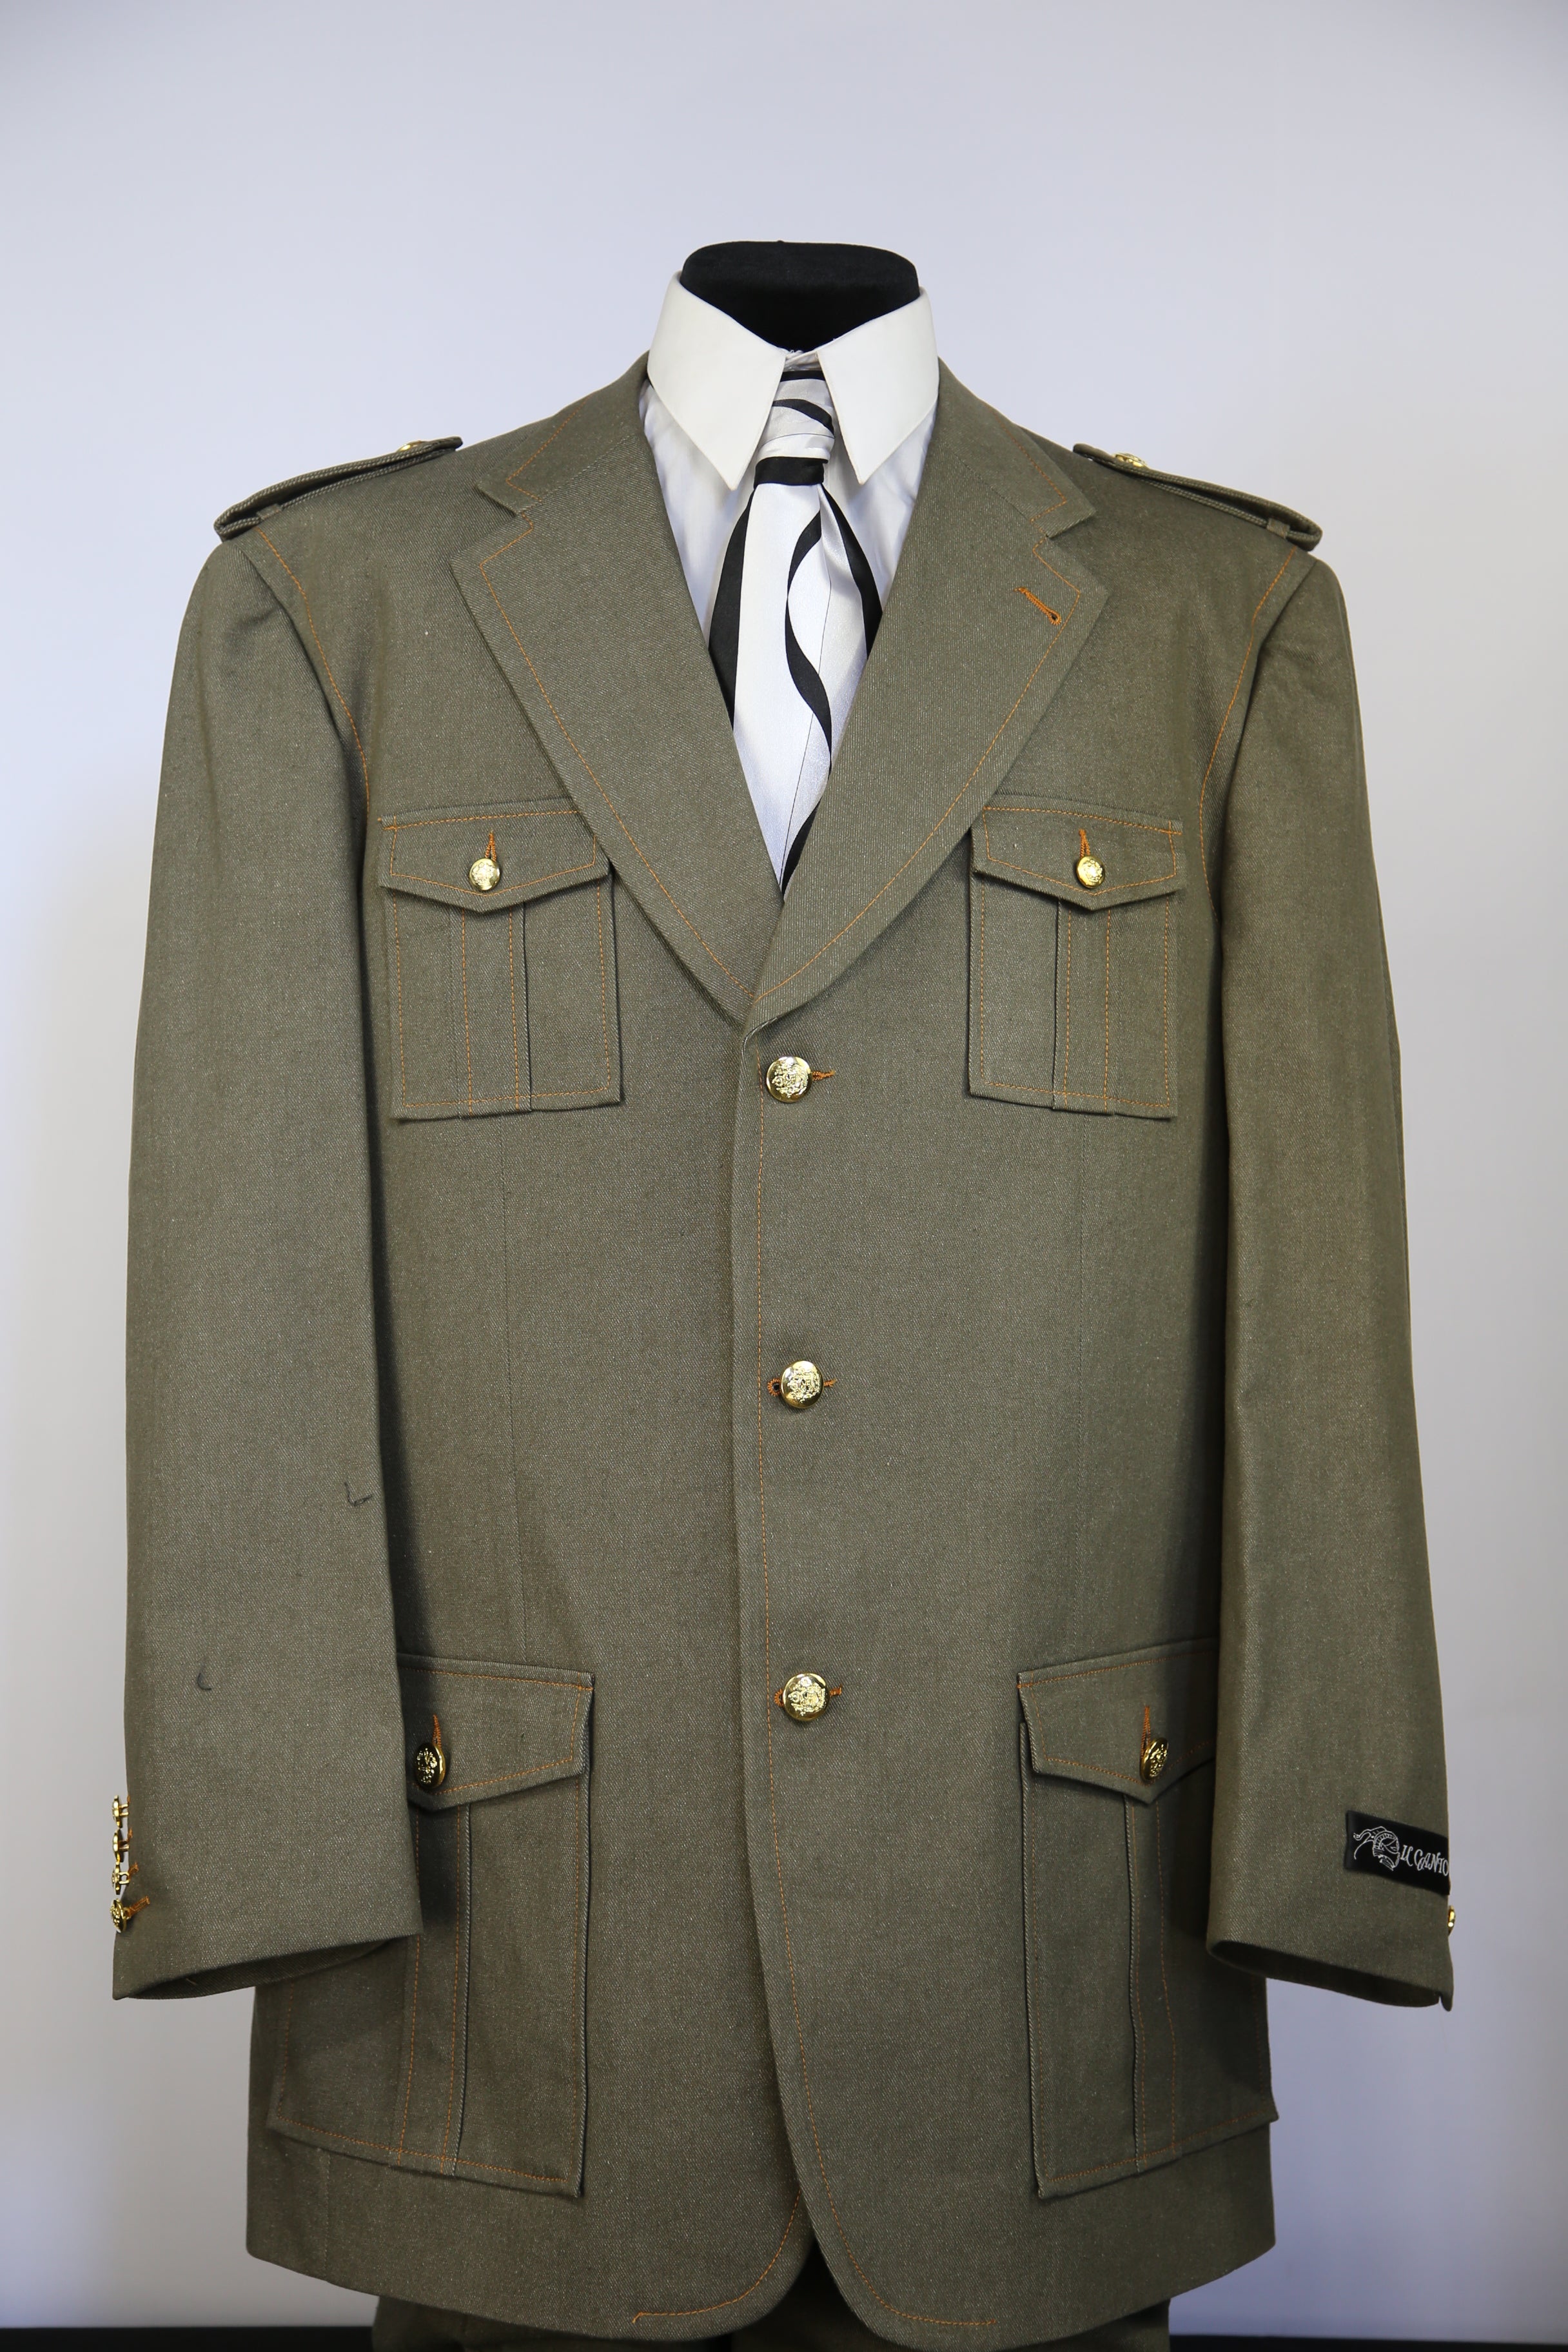 Naval Style Stitch Accent Denim 3pc Zoot Suit Set